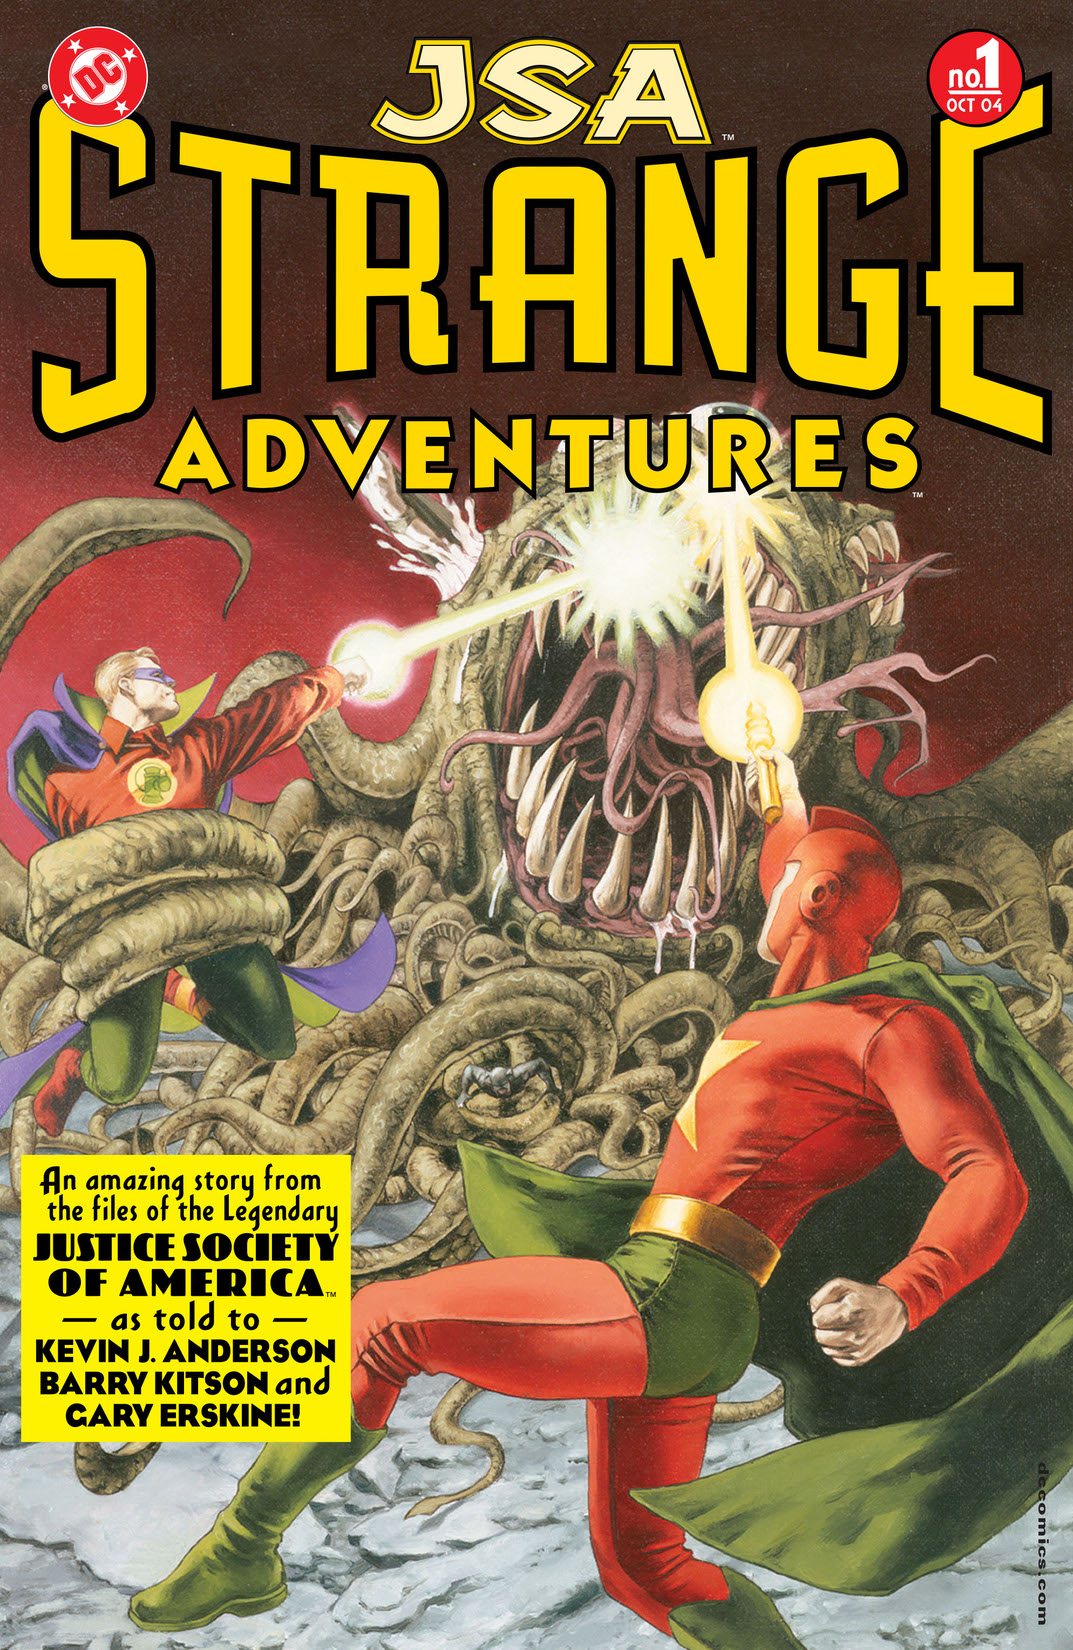 JSA: Strange Adventures #1 preview images